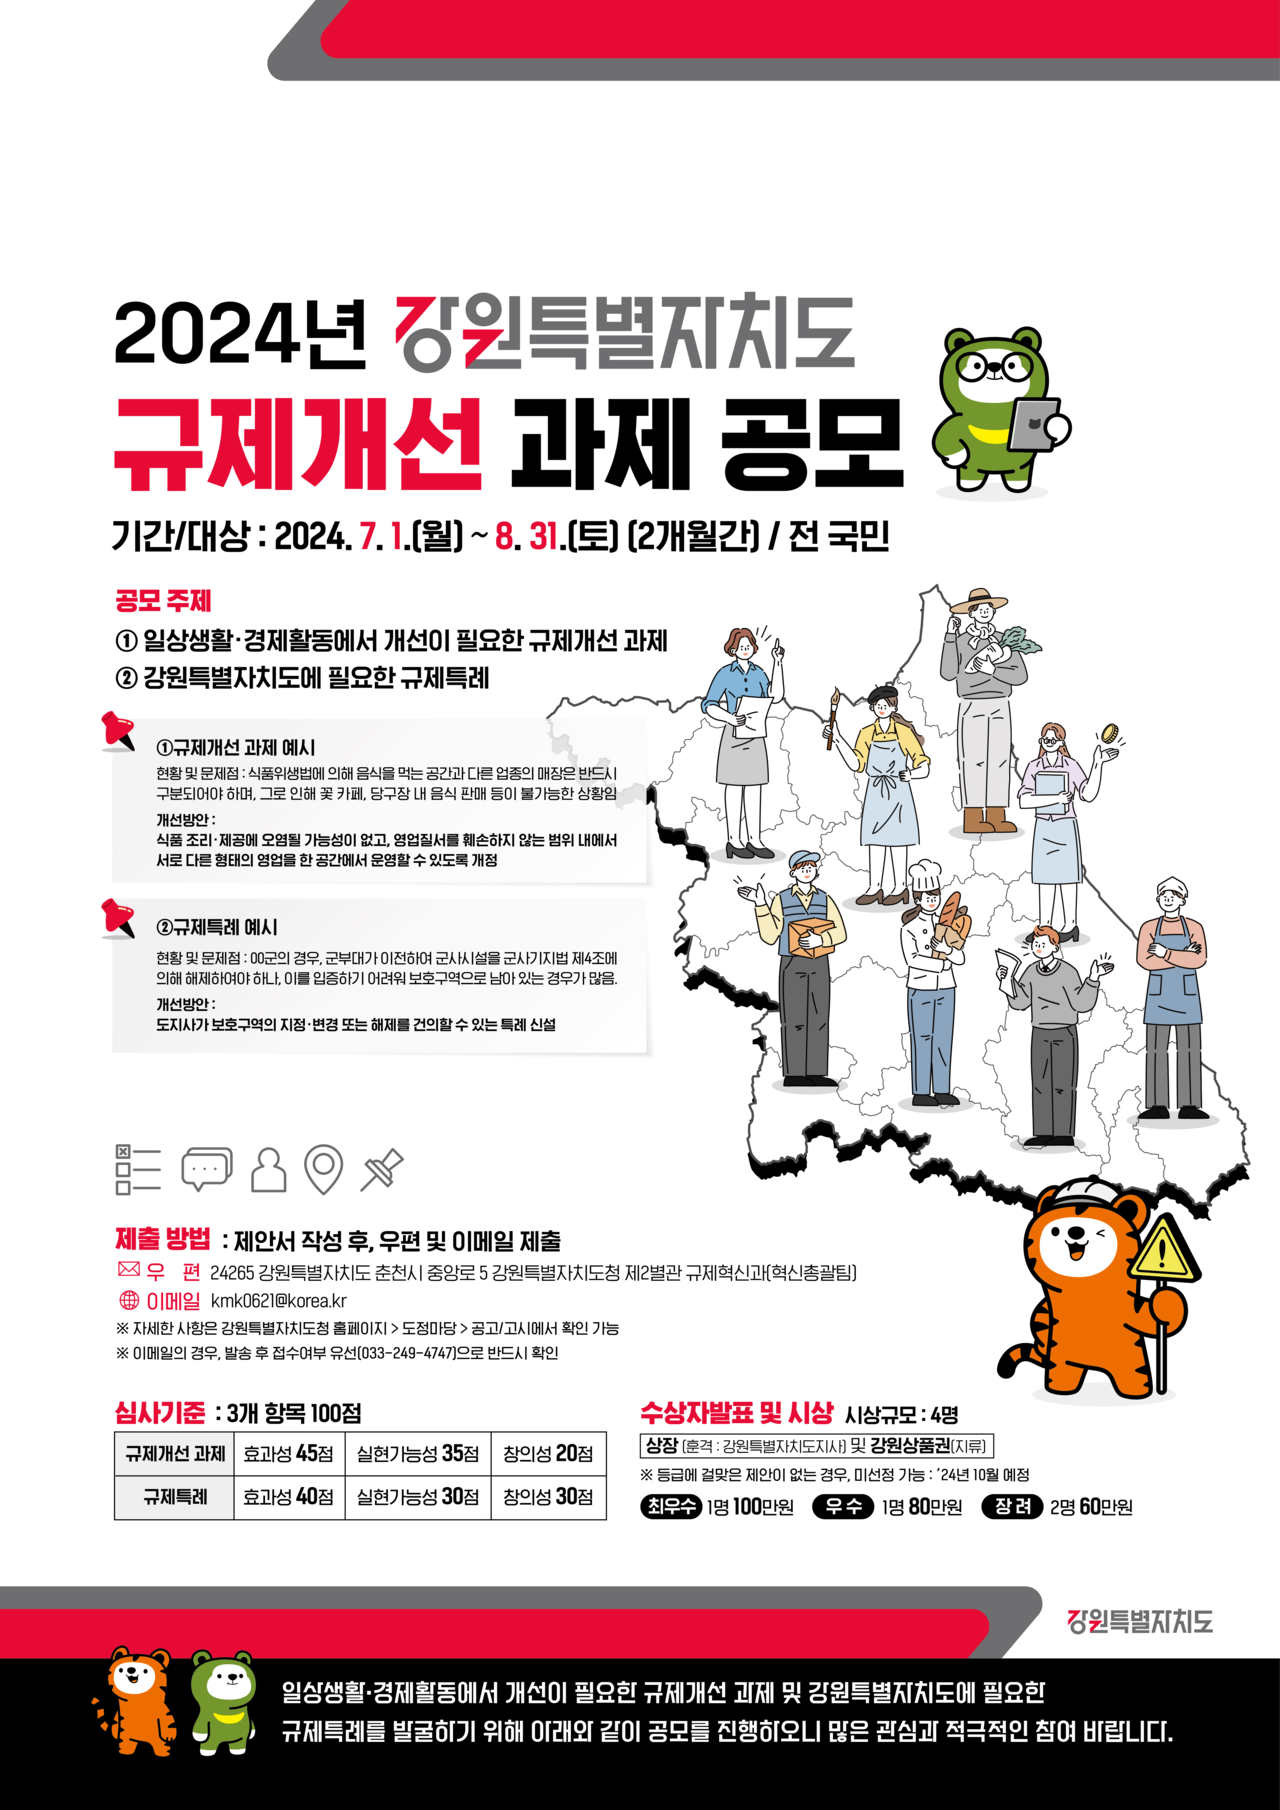 내달까지 진행되는 2024년 강원특별자치도 규제 개선 공모' 포스터. (사진=강원특별자치도)